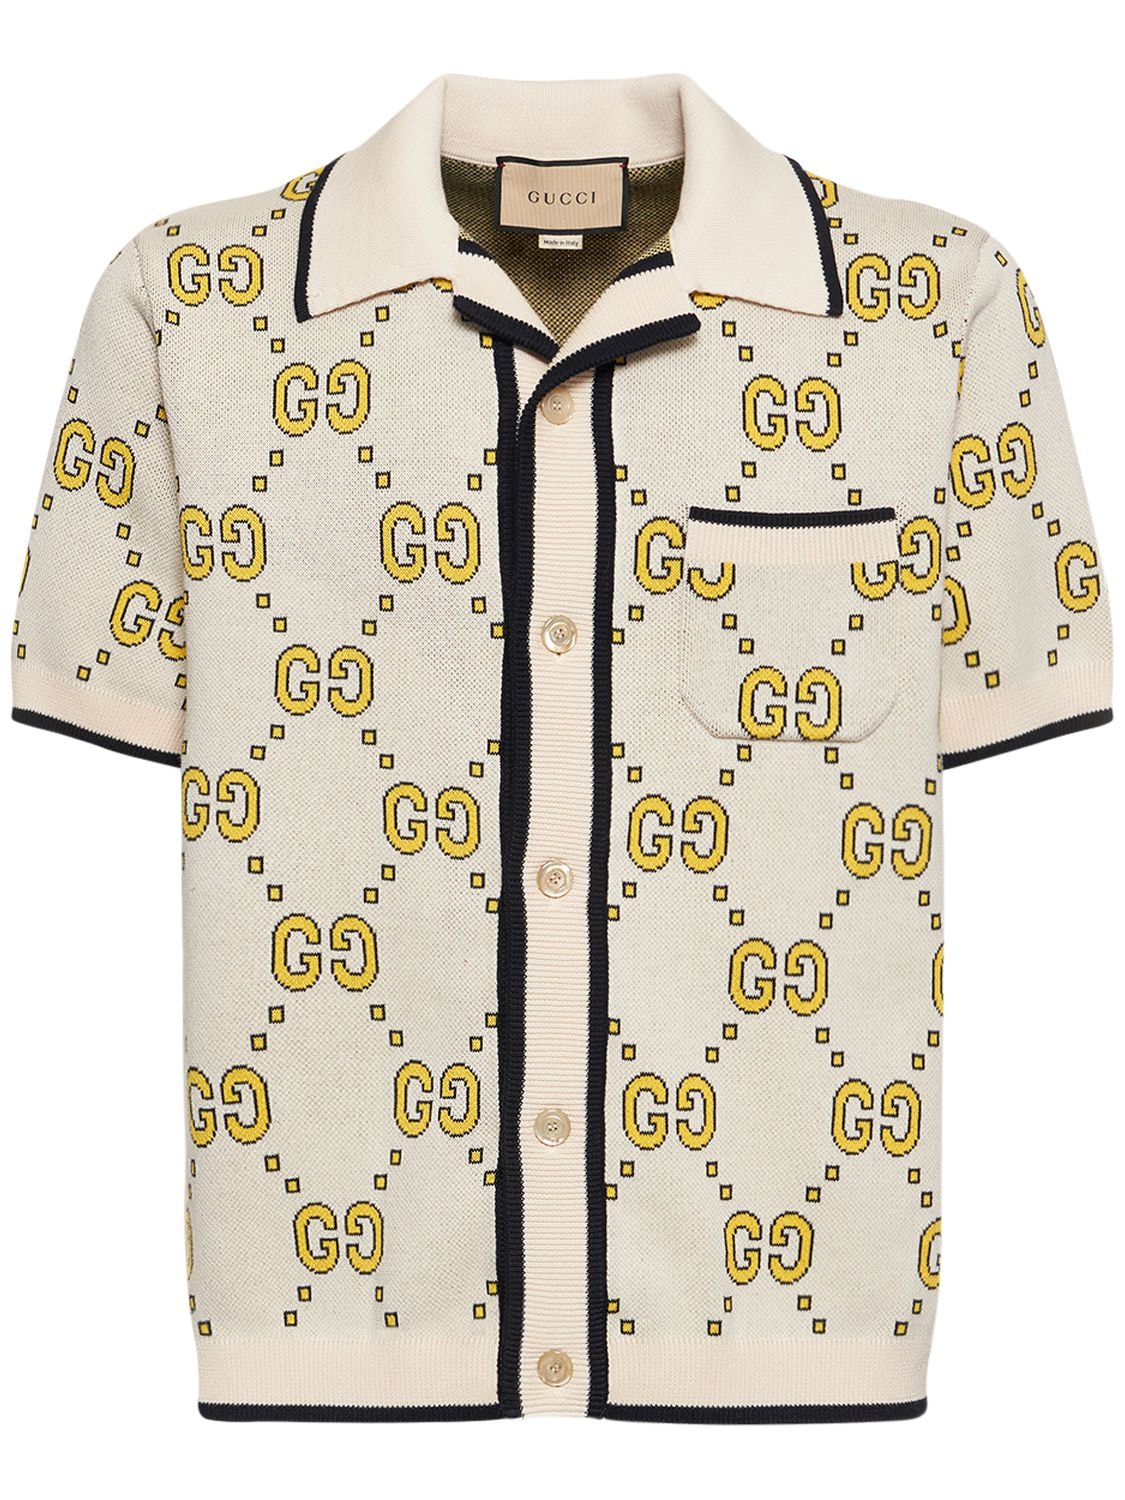 Gucci GG Cotton Bowling Shirt, Size M, White, Ready-to-wear